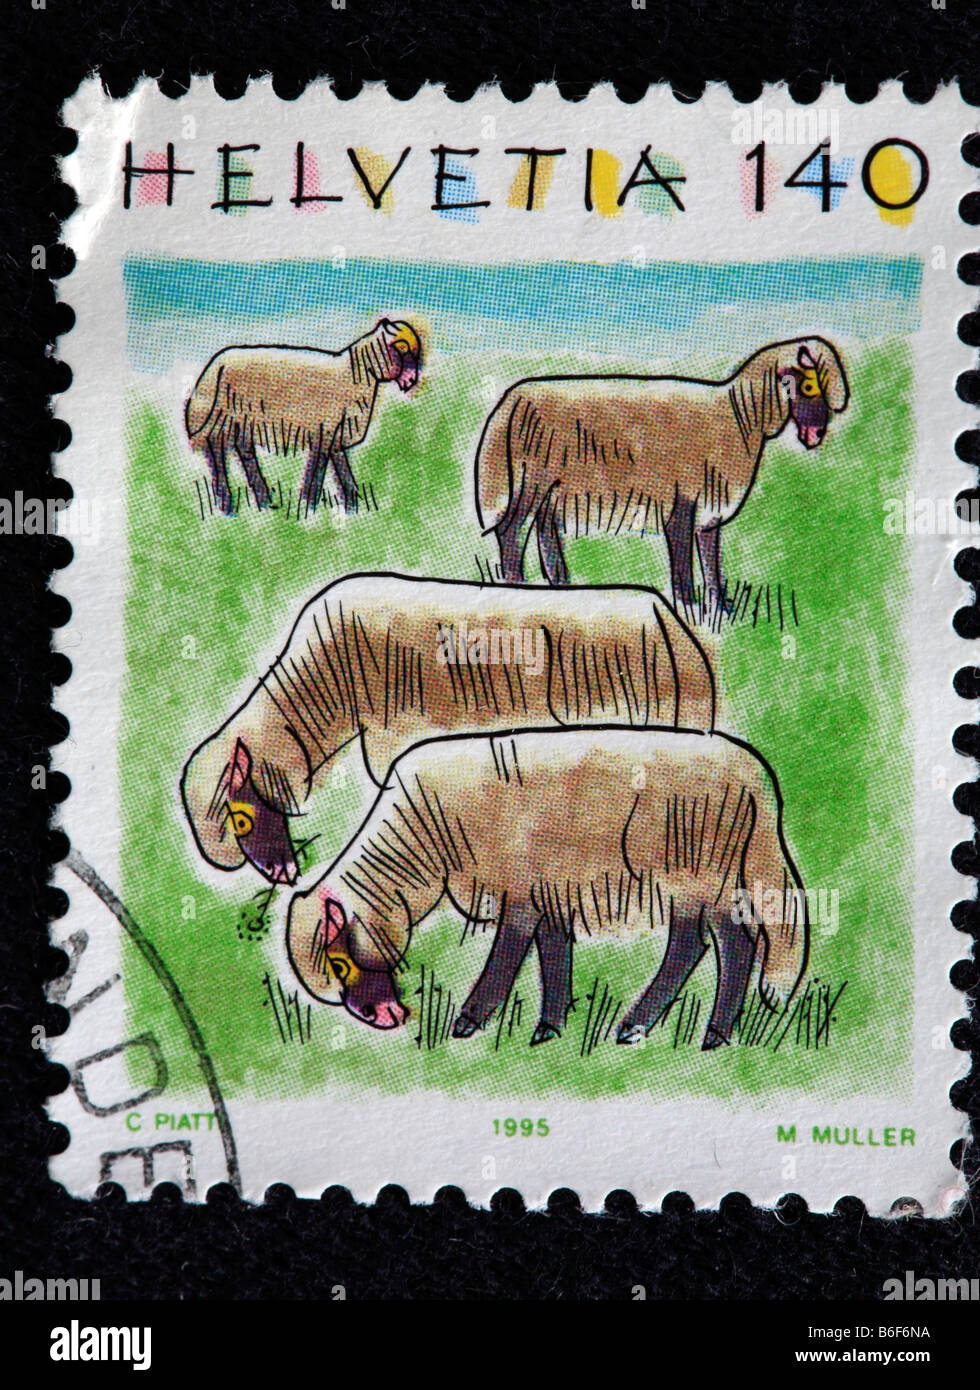 Sheep, postage stamp, Switzerland, 1995 Stock Photo